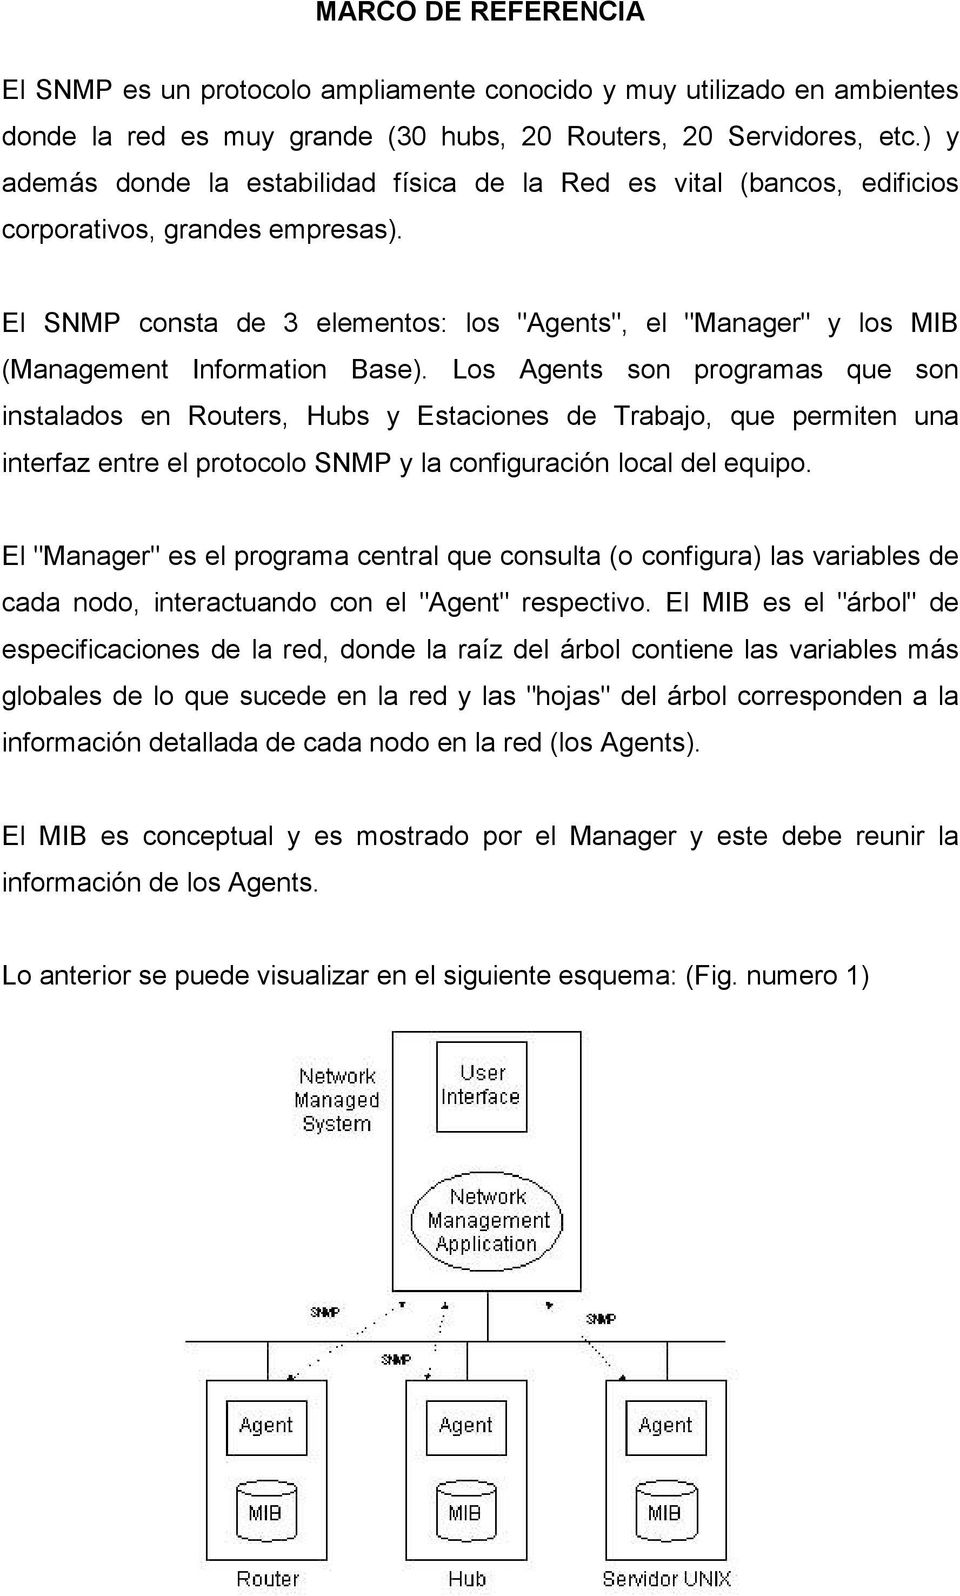 El SNMP consta de 3 elementos: los "Agents", el "Manager" y los MIB (Management Information Base).